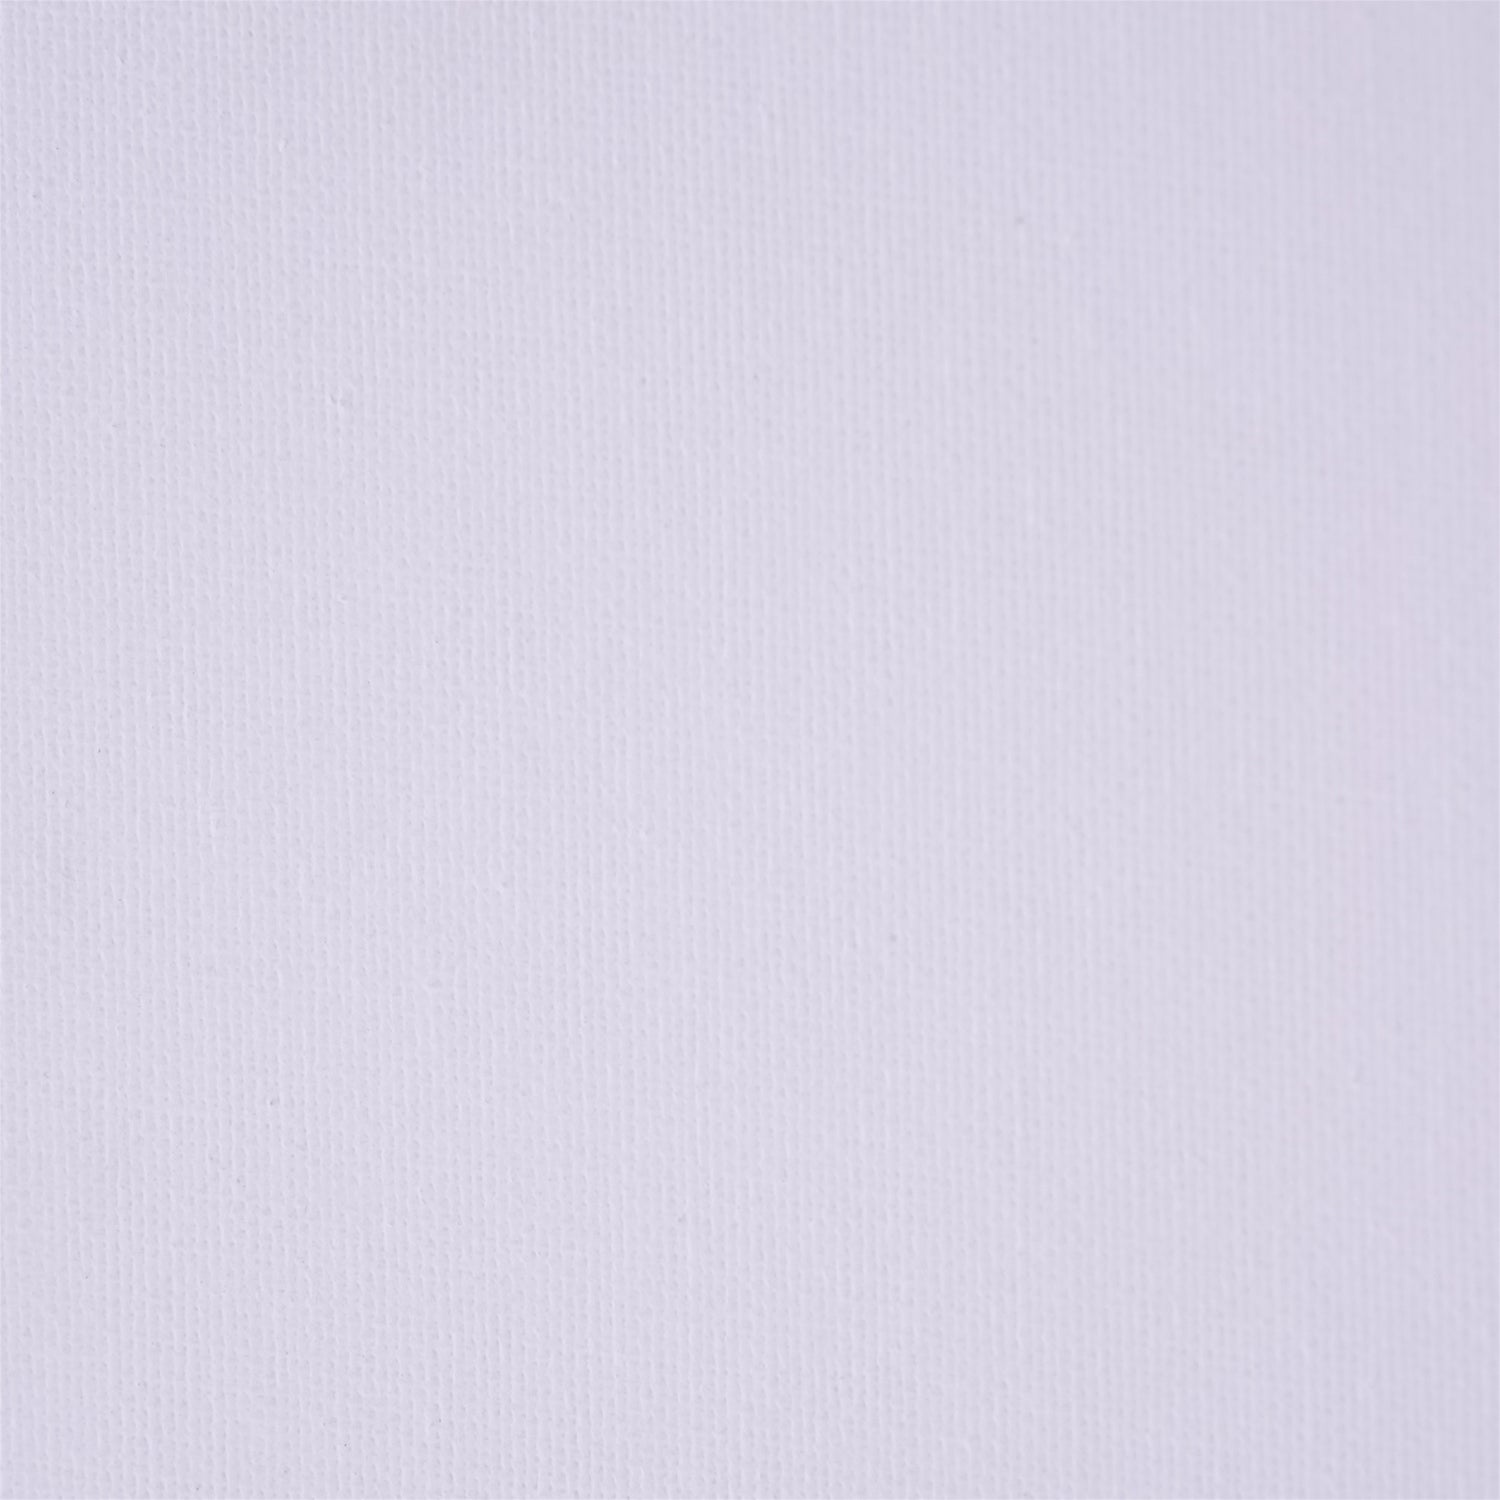 4x KÜNSTLER MALKARTON MIT SCHATTENFUGENRAHMEN 40x50 cm | Leinwand Set